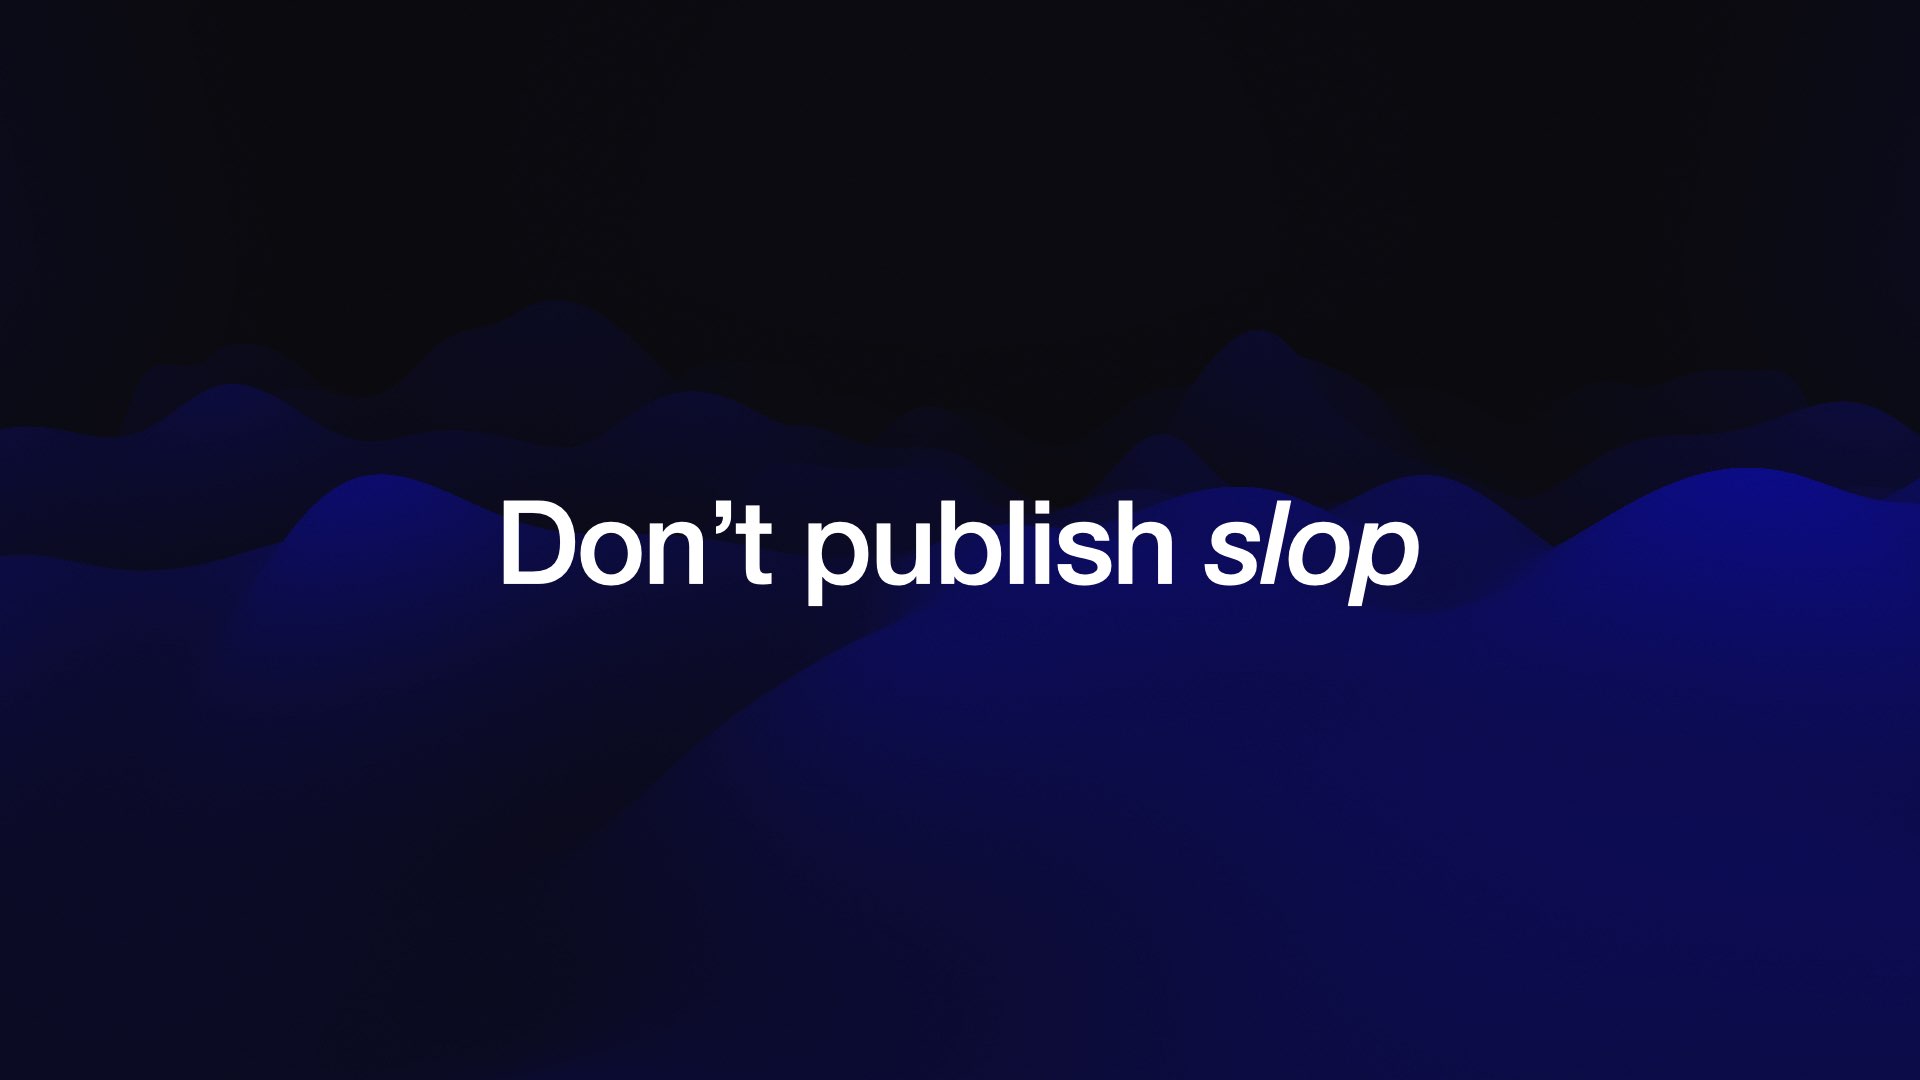 Don’t publish slop 